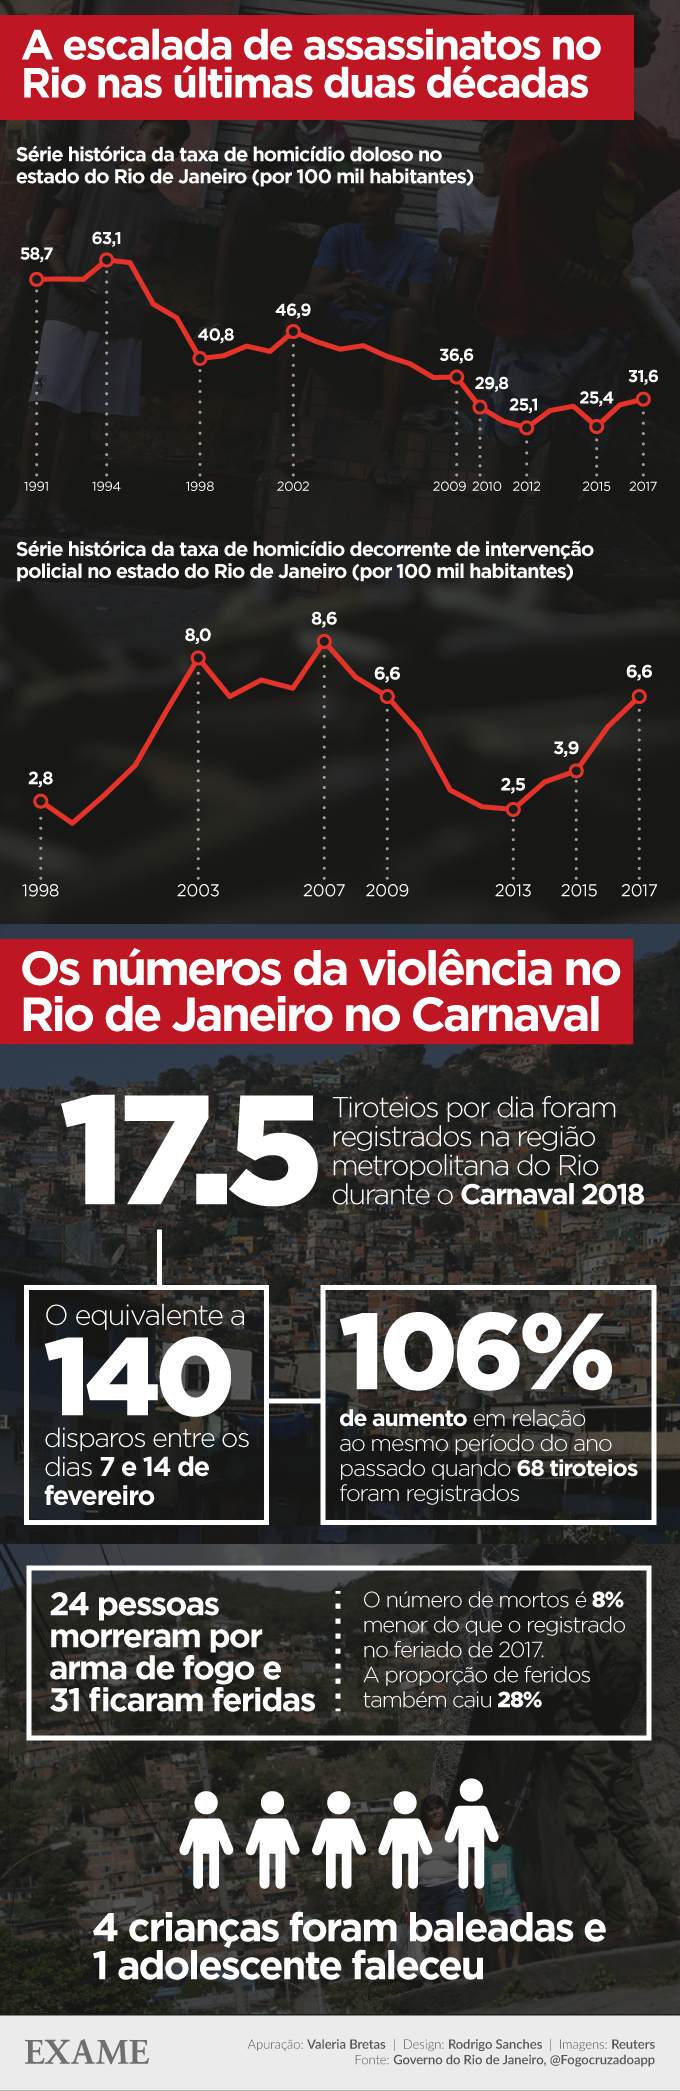 Infográfico da violência no Rio de Janeiro